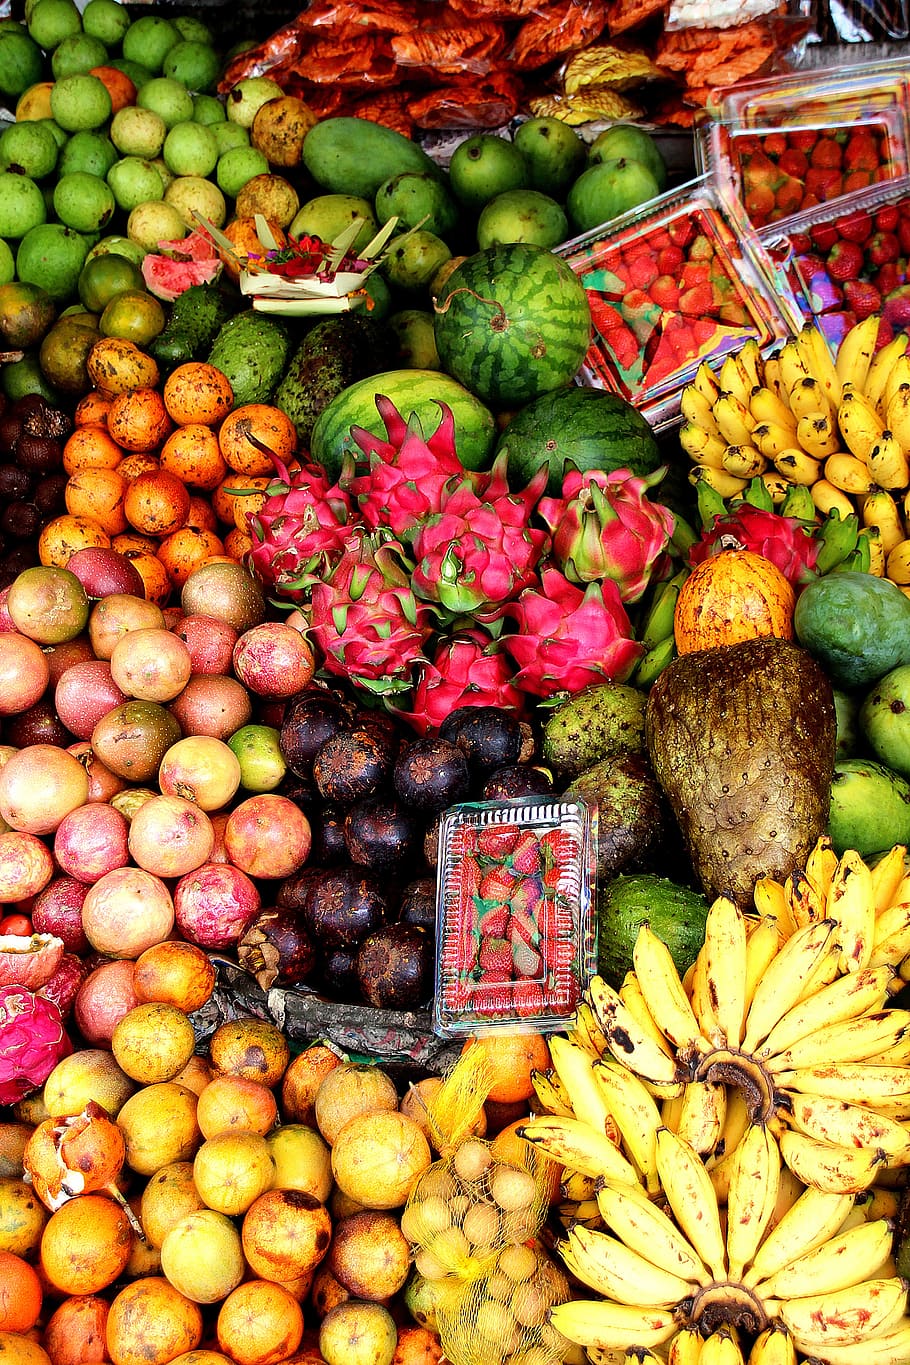 Bali, Buah, Eksotis, buah-buahan, buah eksotis, bermacam-macam, pajangan, warna-warni, kuliner, enak